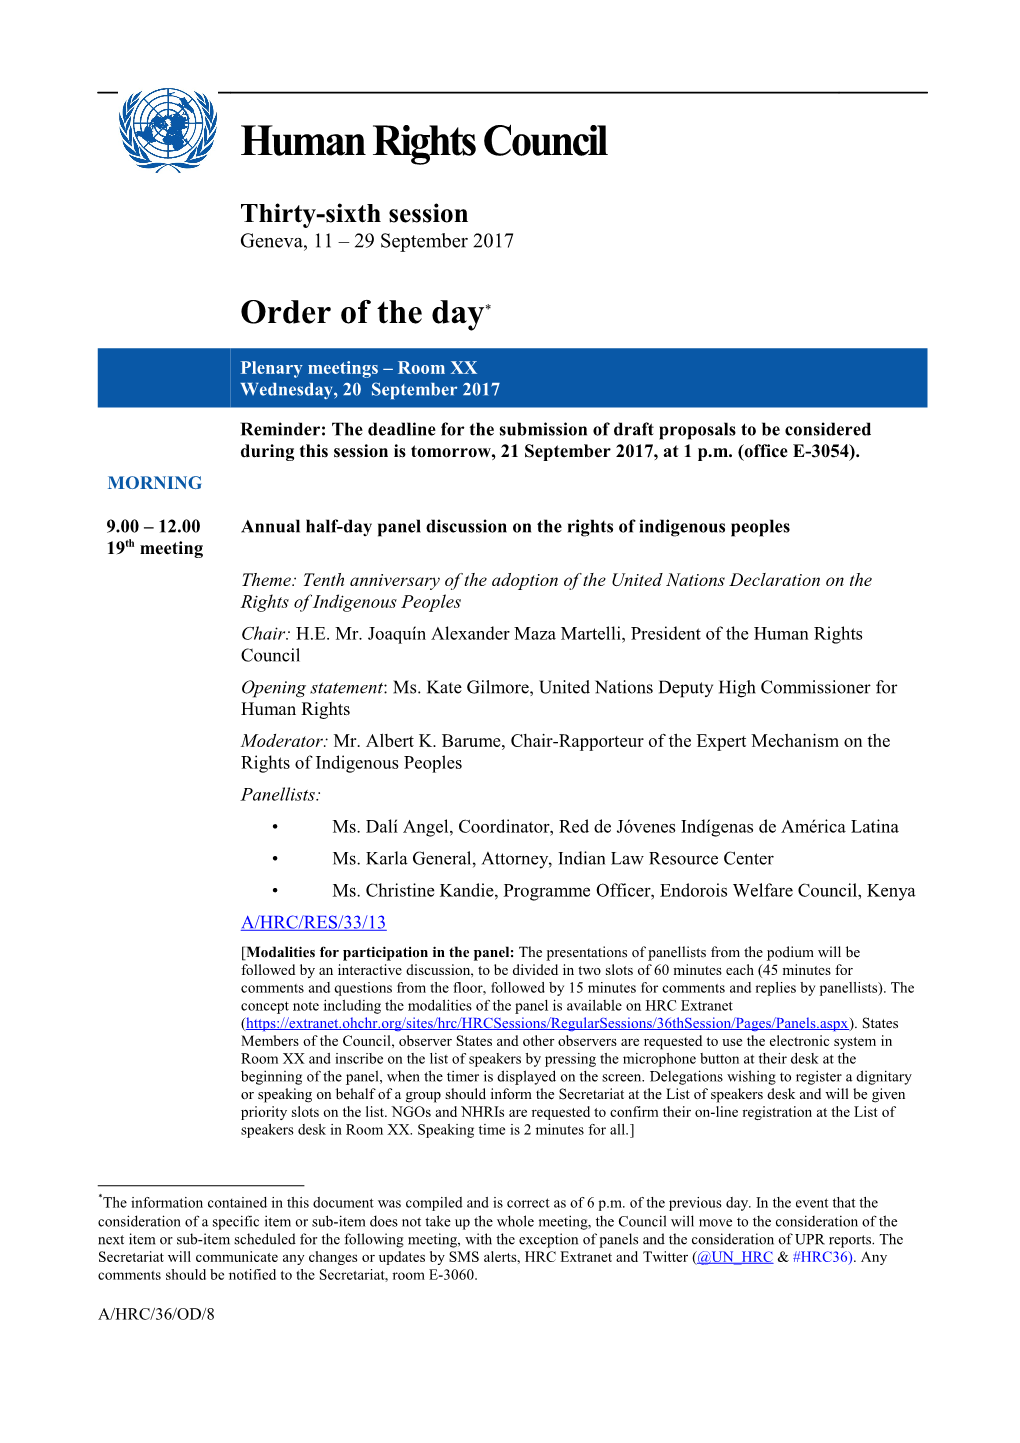 Wednesday, 20 September 2017, Order of the Day